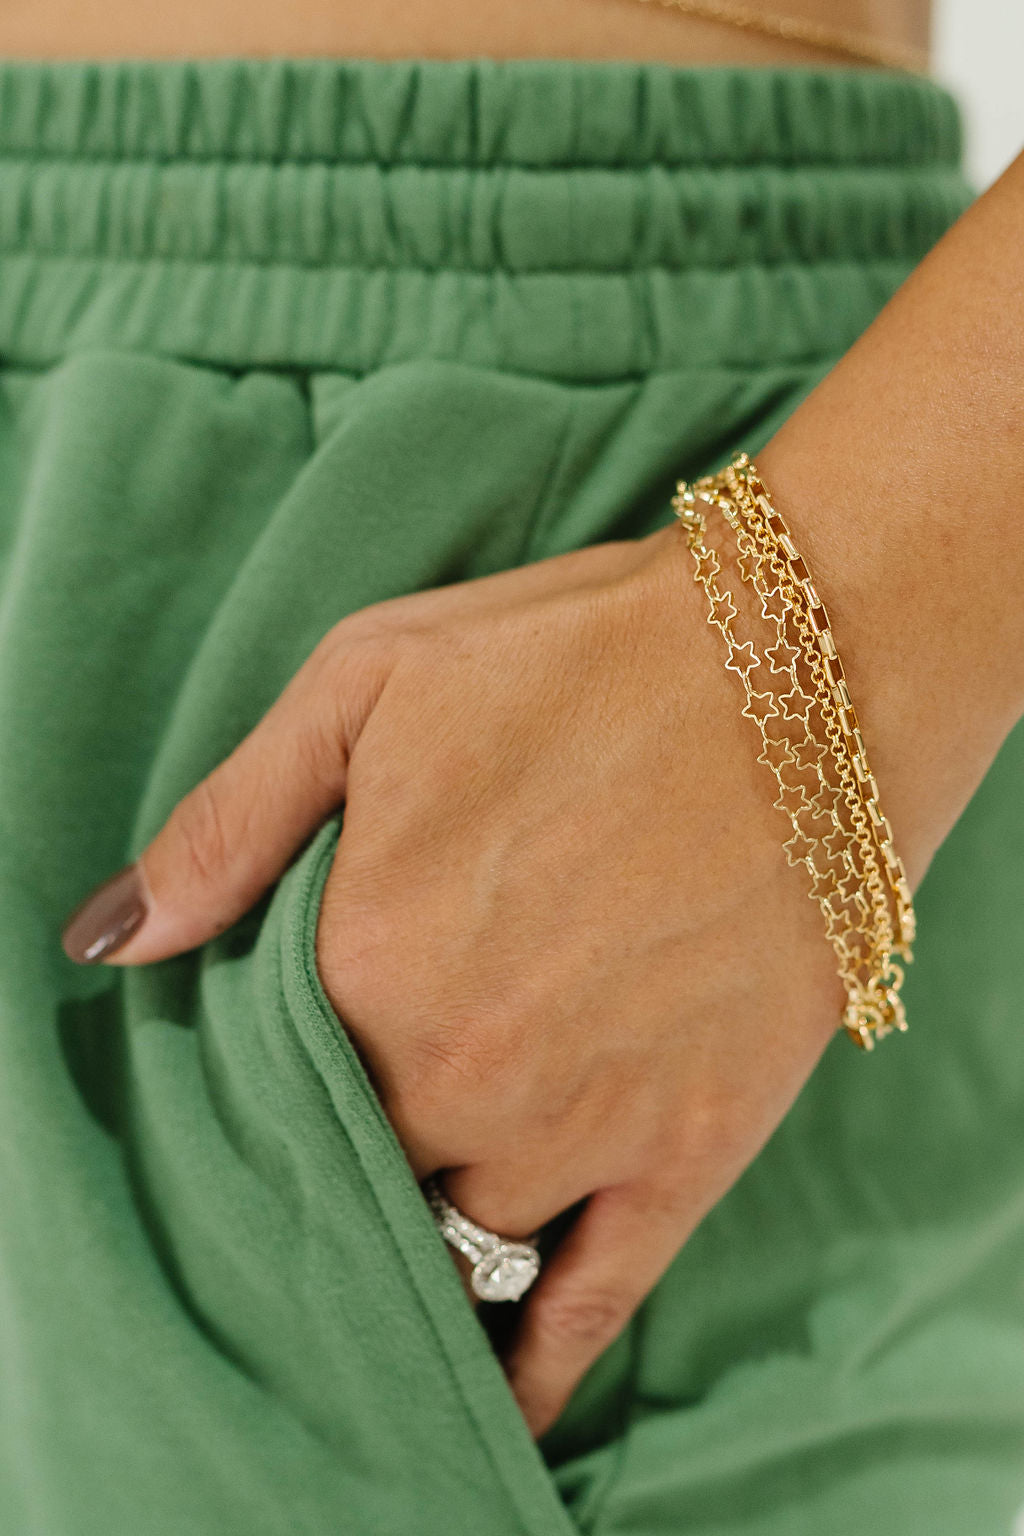 Gold-Filled Bracelets - You Pick The Style